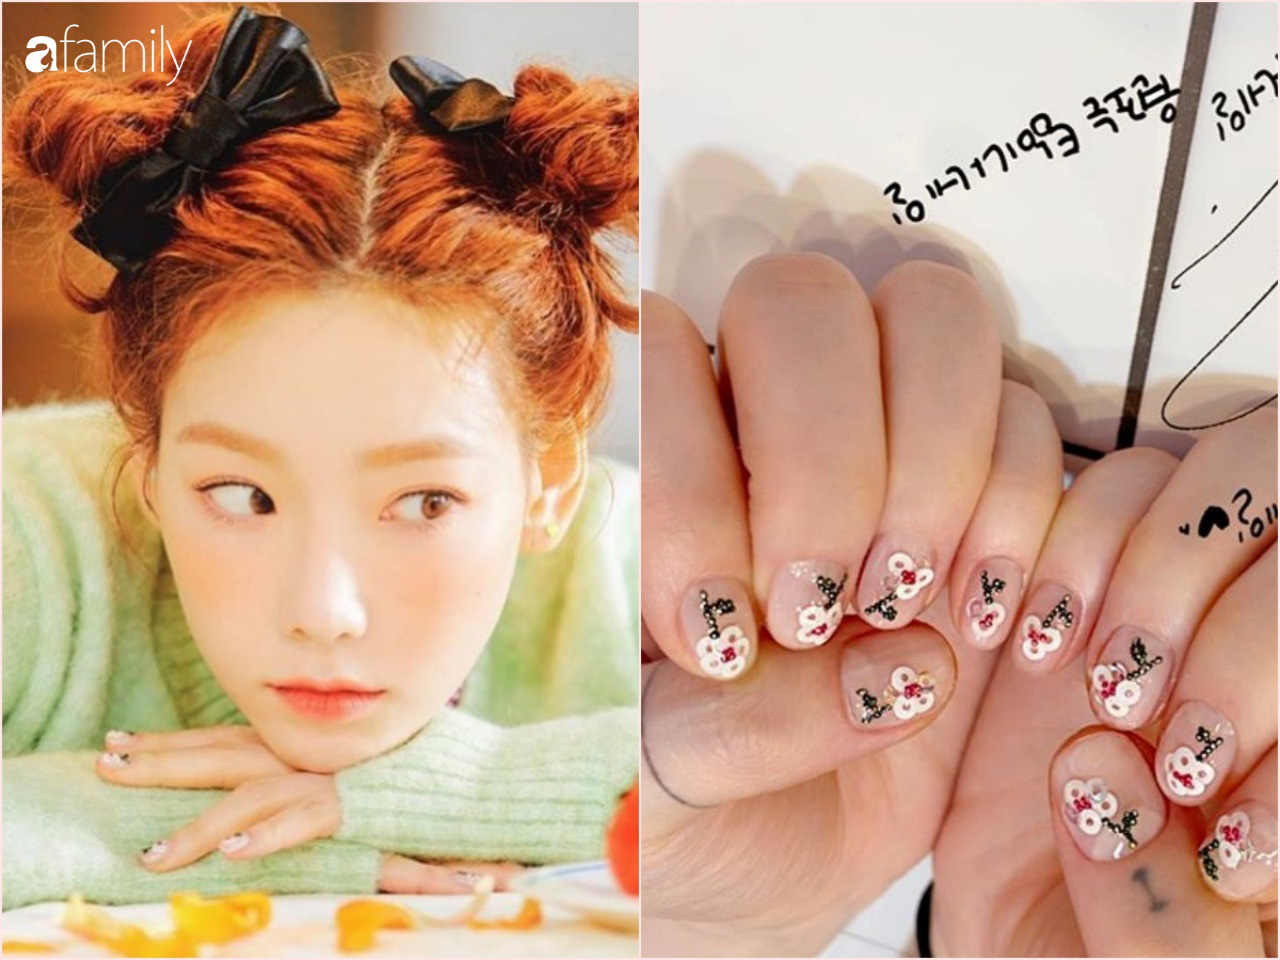 Taeyeon bánh bèo quá thể khi toàn làm nail kiểu dễ thương, xinh yêu hết mức - Ảnh 1.